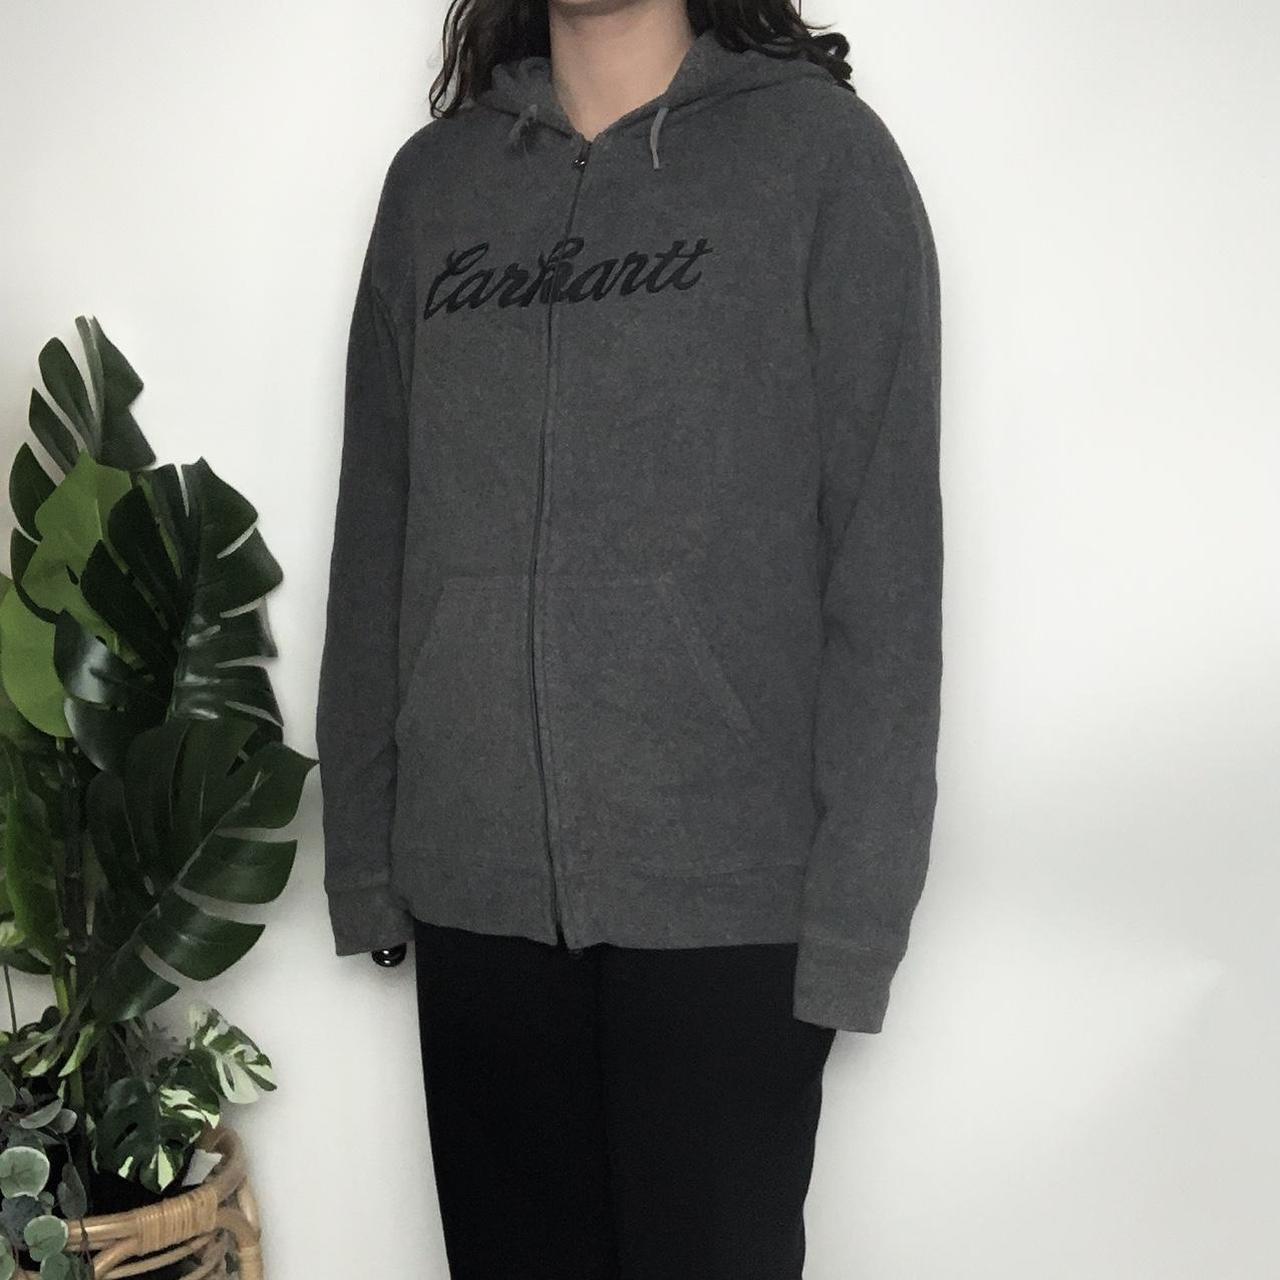 Vintage 90s Carhartt grey zip-up fleece hoodie